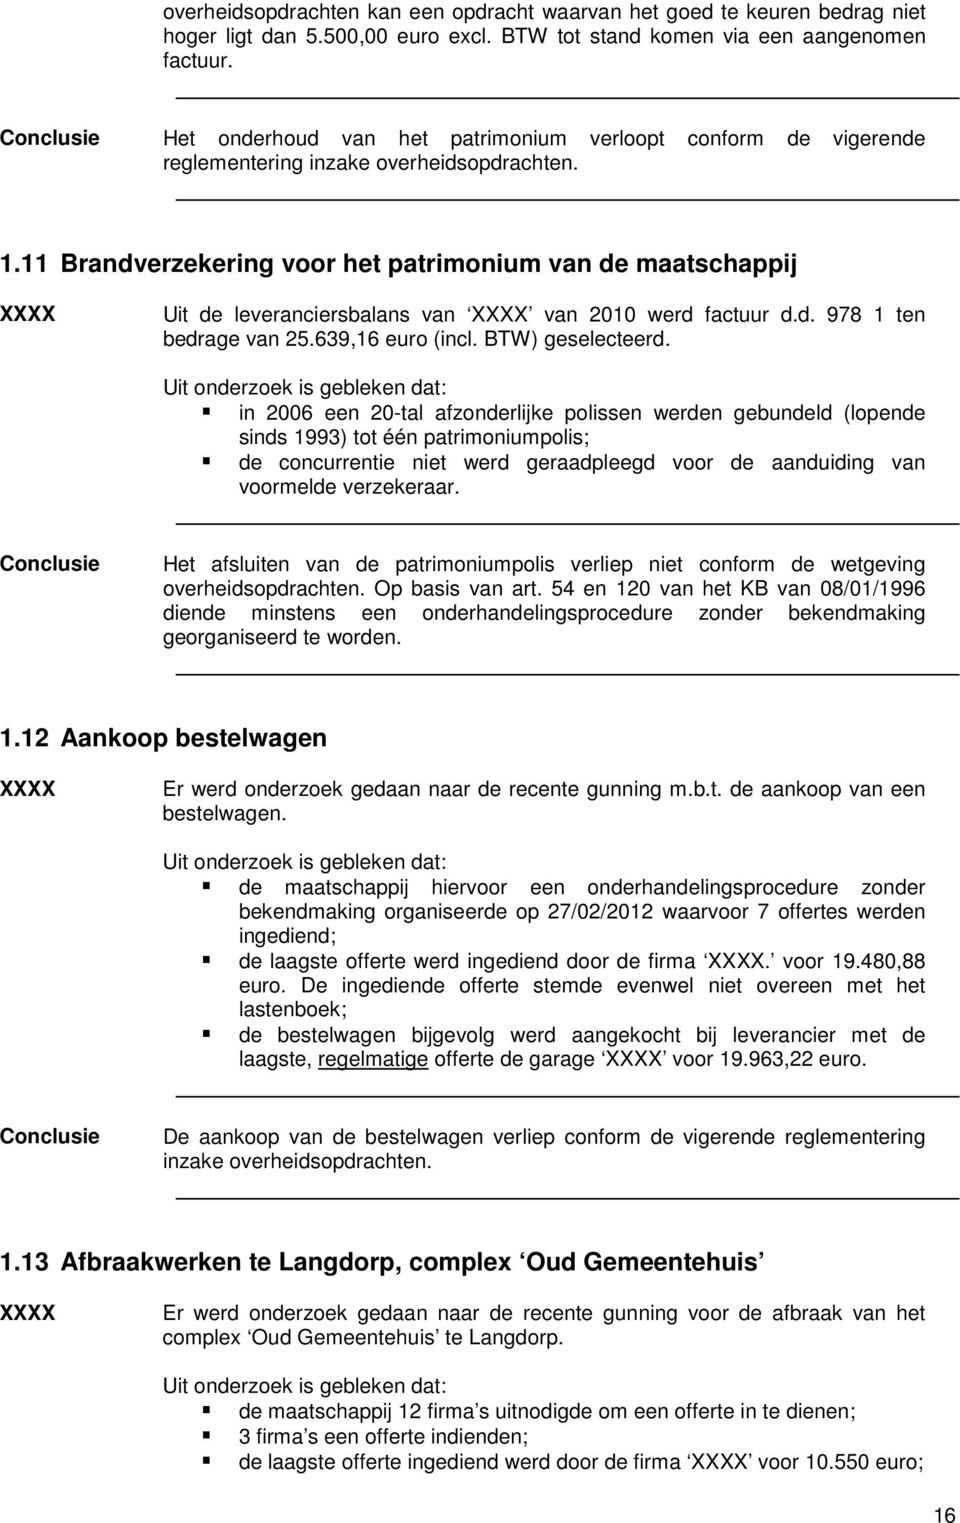 11 Brandverzekering voor het patrimonium van de maatschappij XXXX Uit de leveranciersbalans van XXXX van 2010 werd factuur d.d. 978 1 ten bedrage van 25.639,16 euro (incl. BTW) geselecteerd.